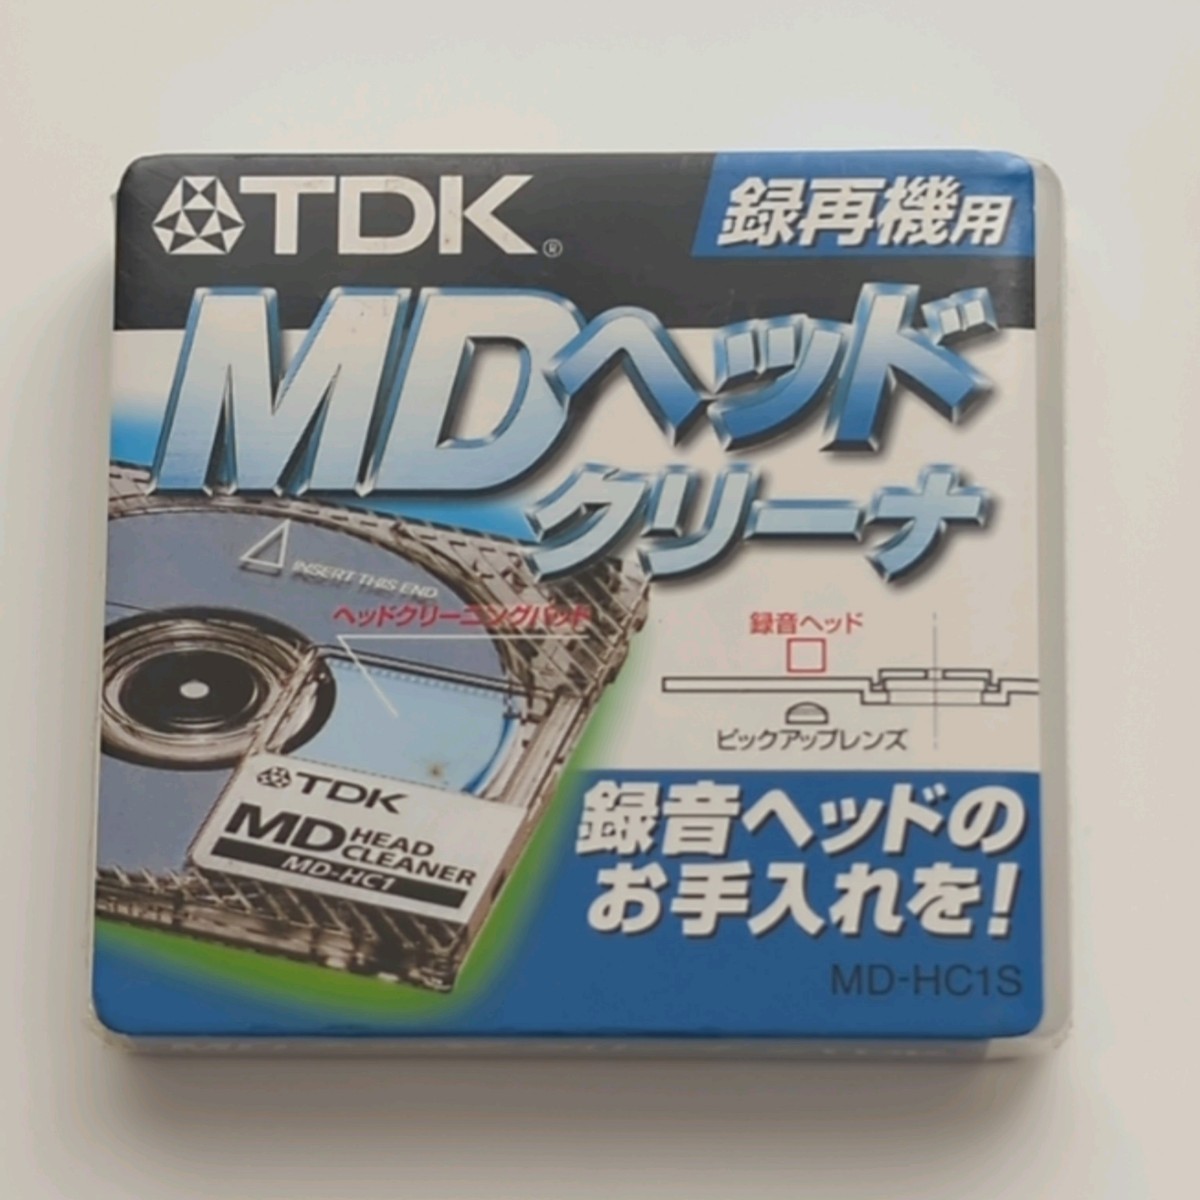 レンズクリーナー 専用機 TDK MDヘッドクリーナー 録再機用 MD-HC1S